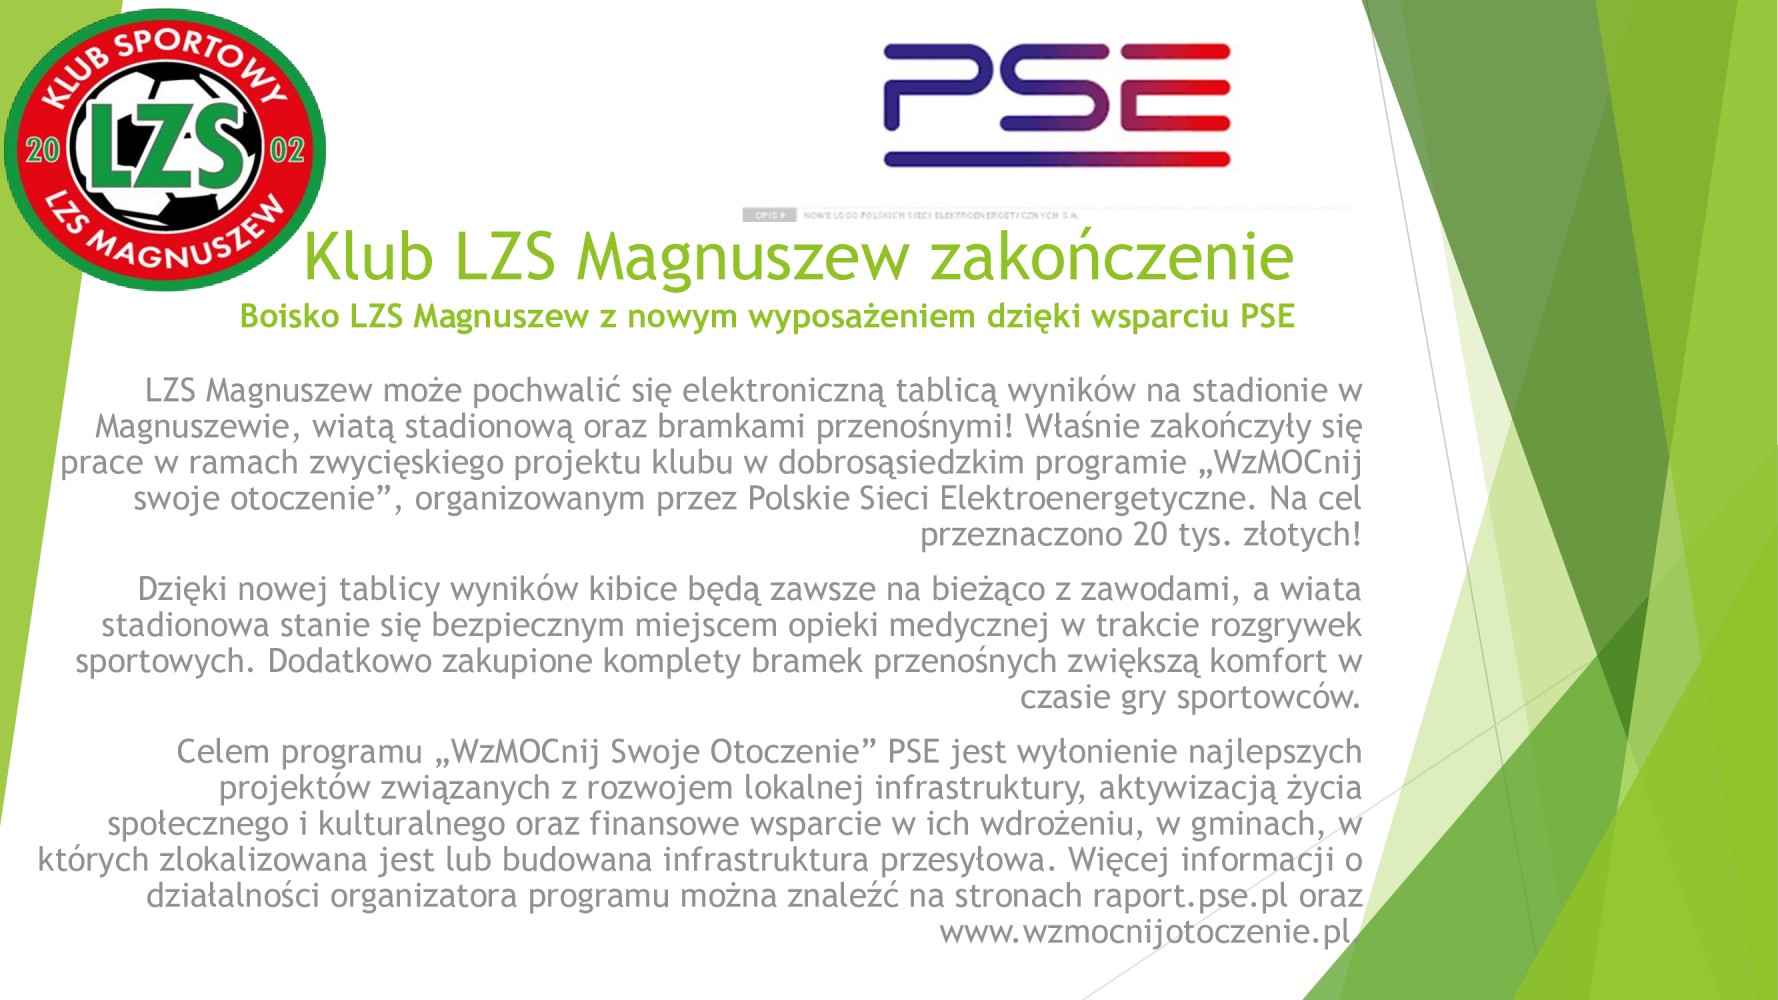 Klub-LZS-Magnuszew-zakończenie-PSE